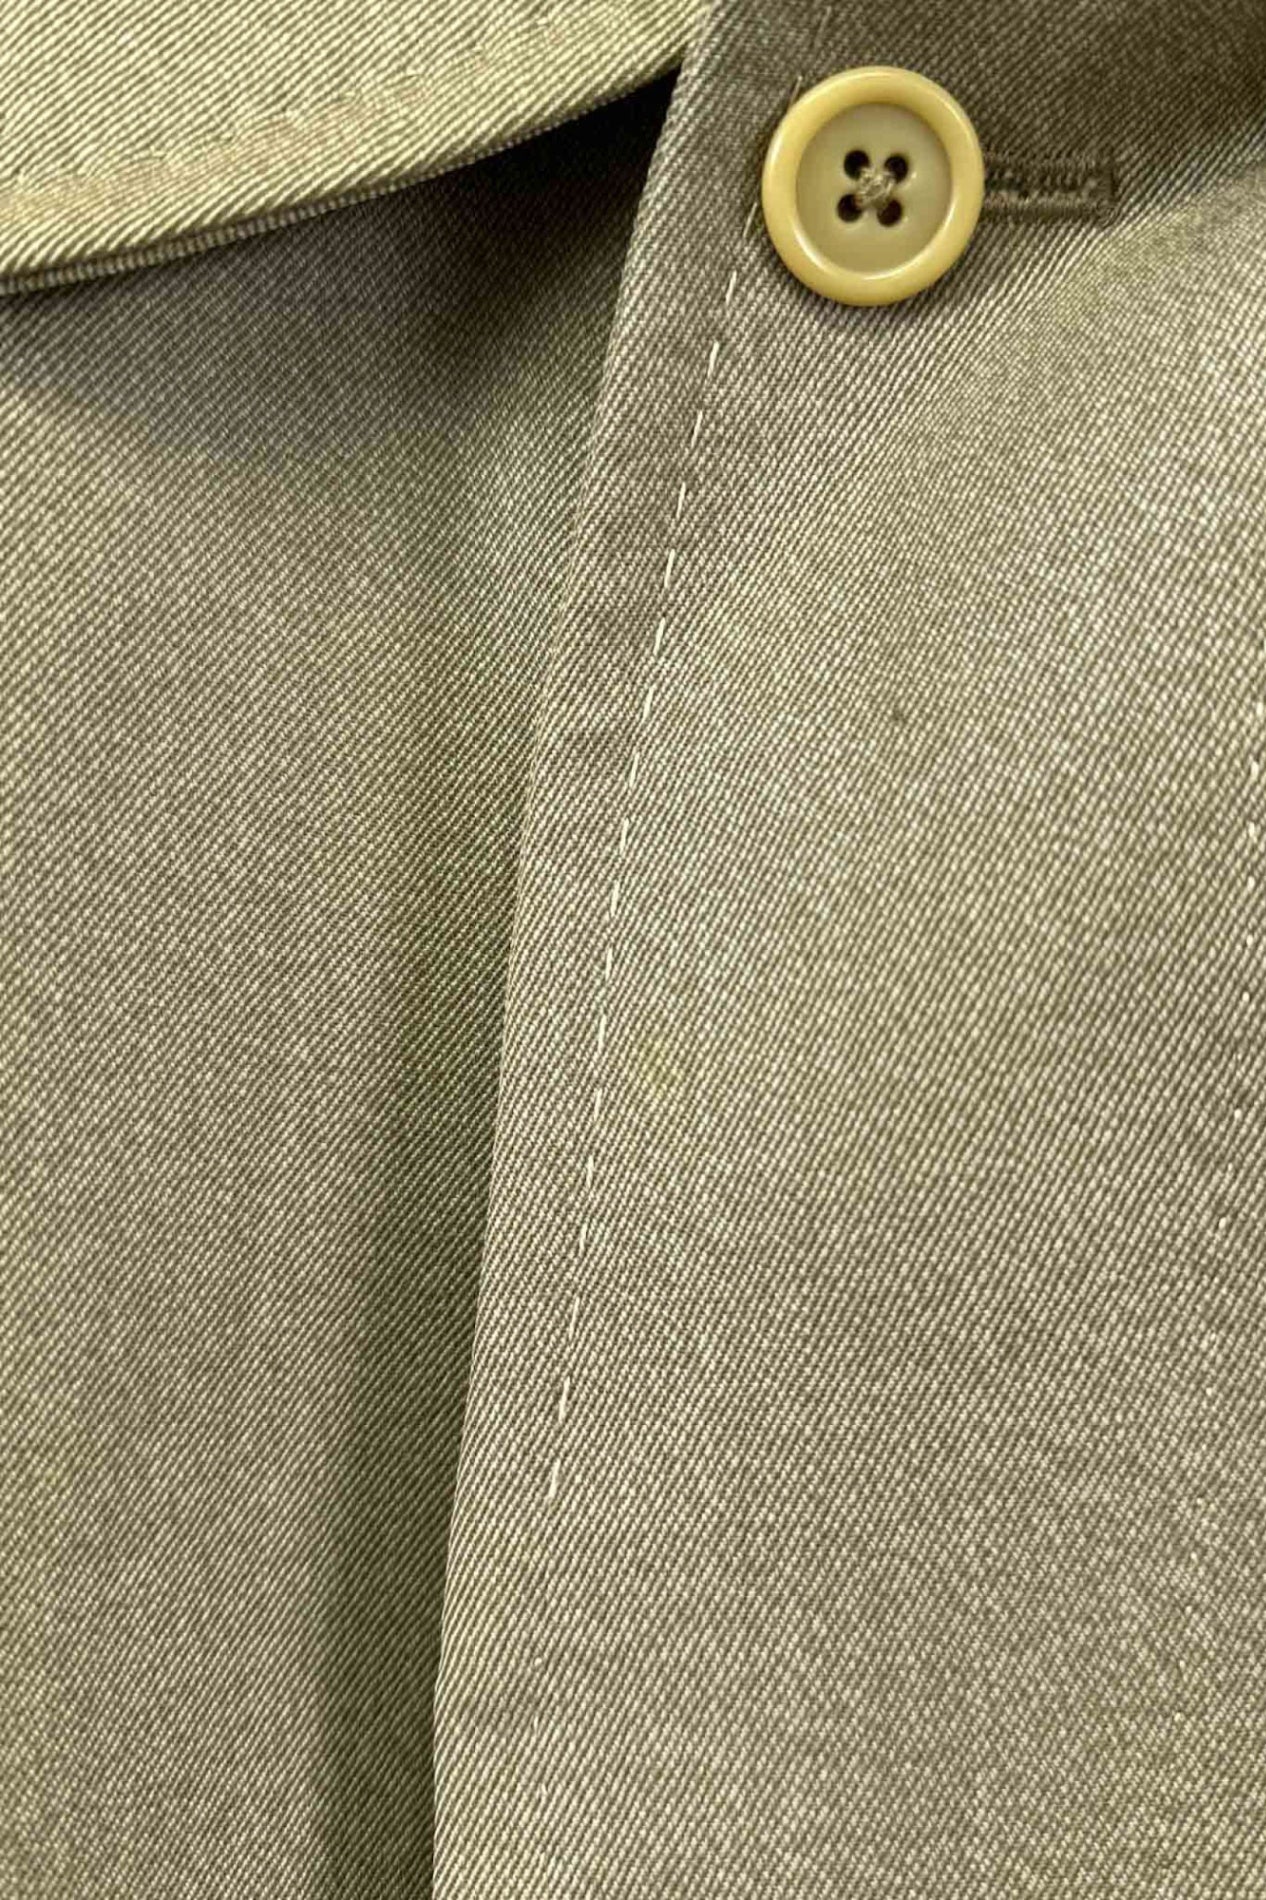 90's Made in ENGLAND Aquascutum coat